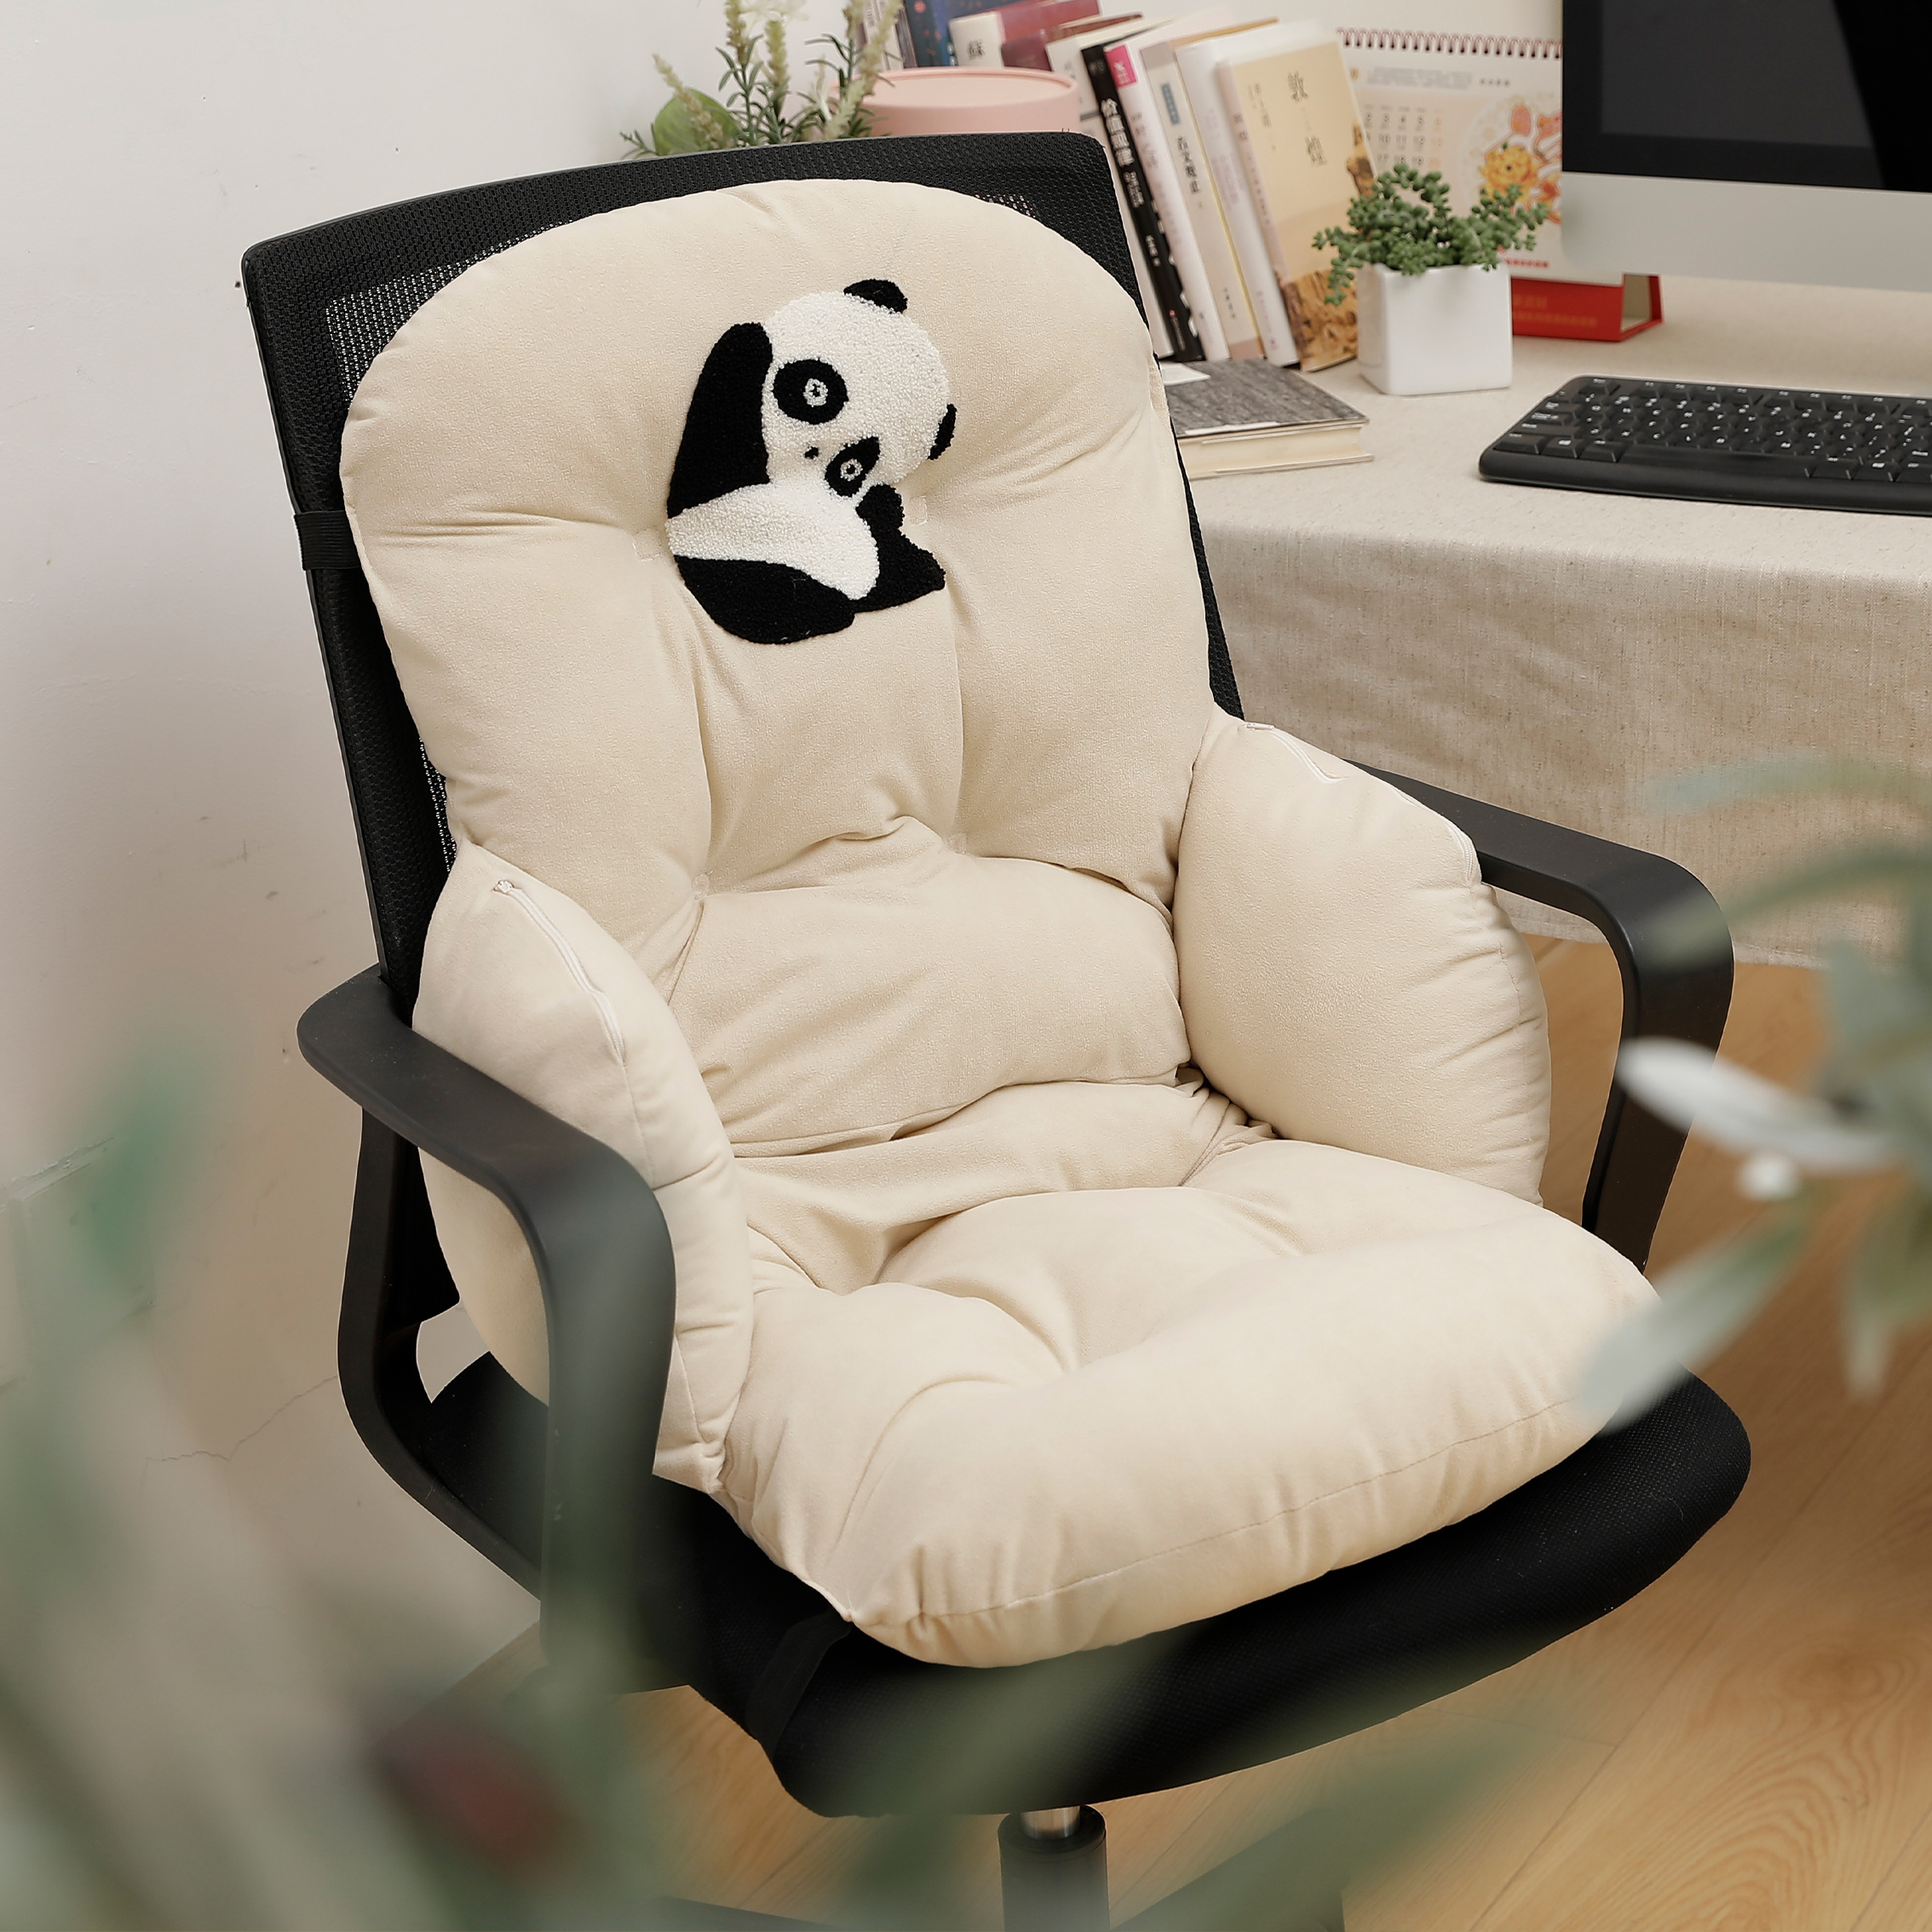 加热熊猫刺绣包围椅垫可爱卡通坐垫子椅垫靠垫一体学生宿舍屁股垫